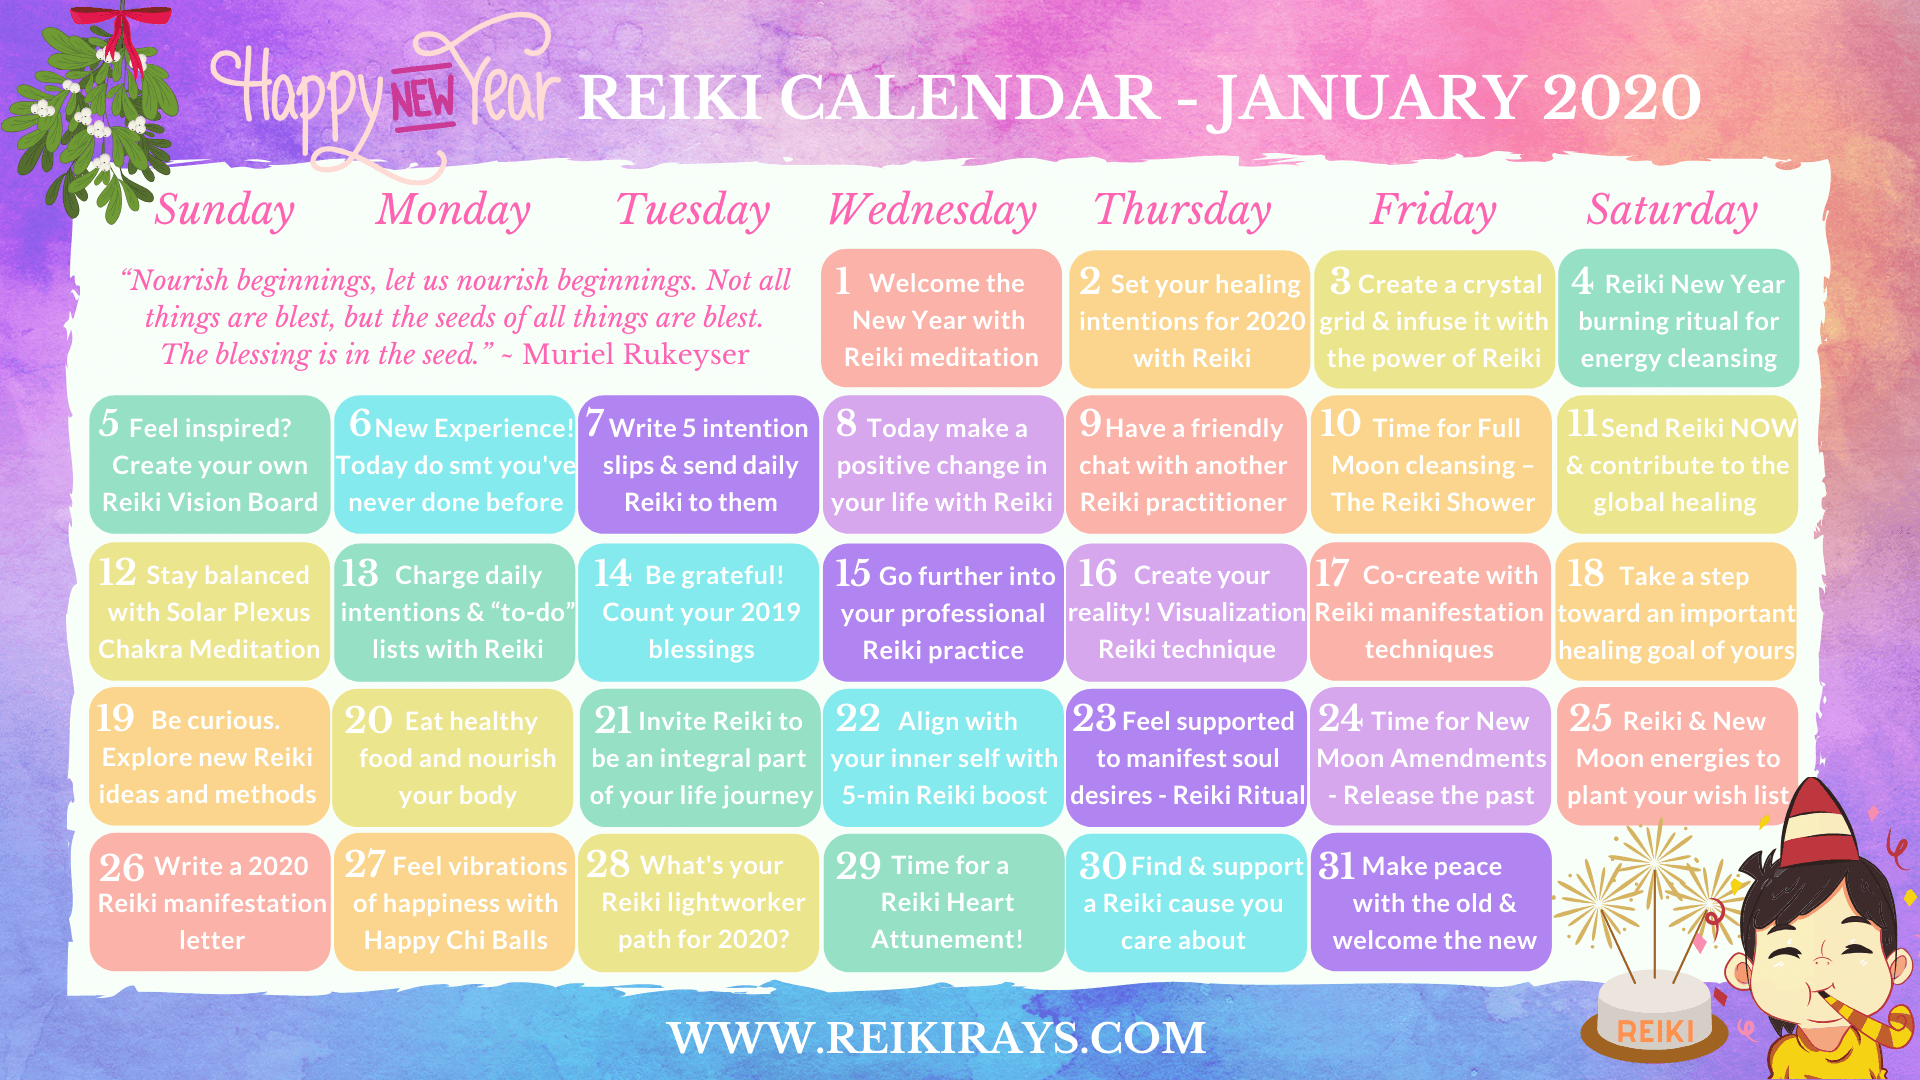 Happy New Year Reiki Calendar January 2020 - Reiki Rays